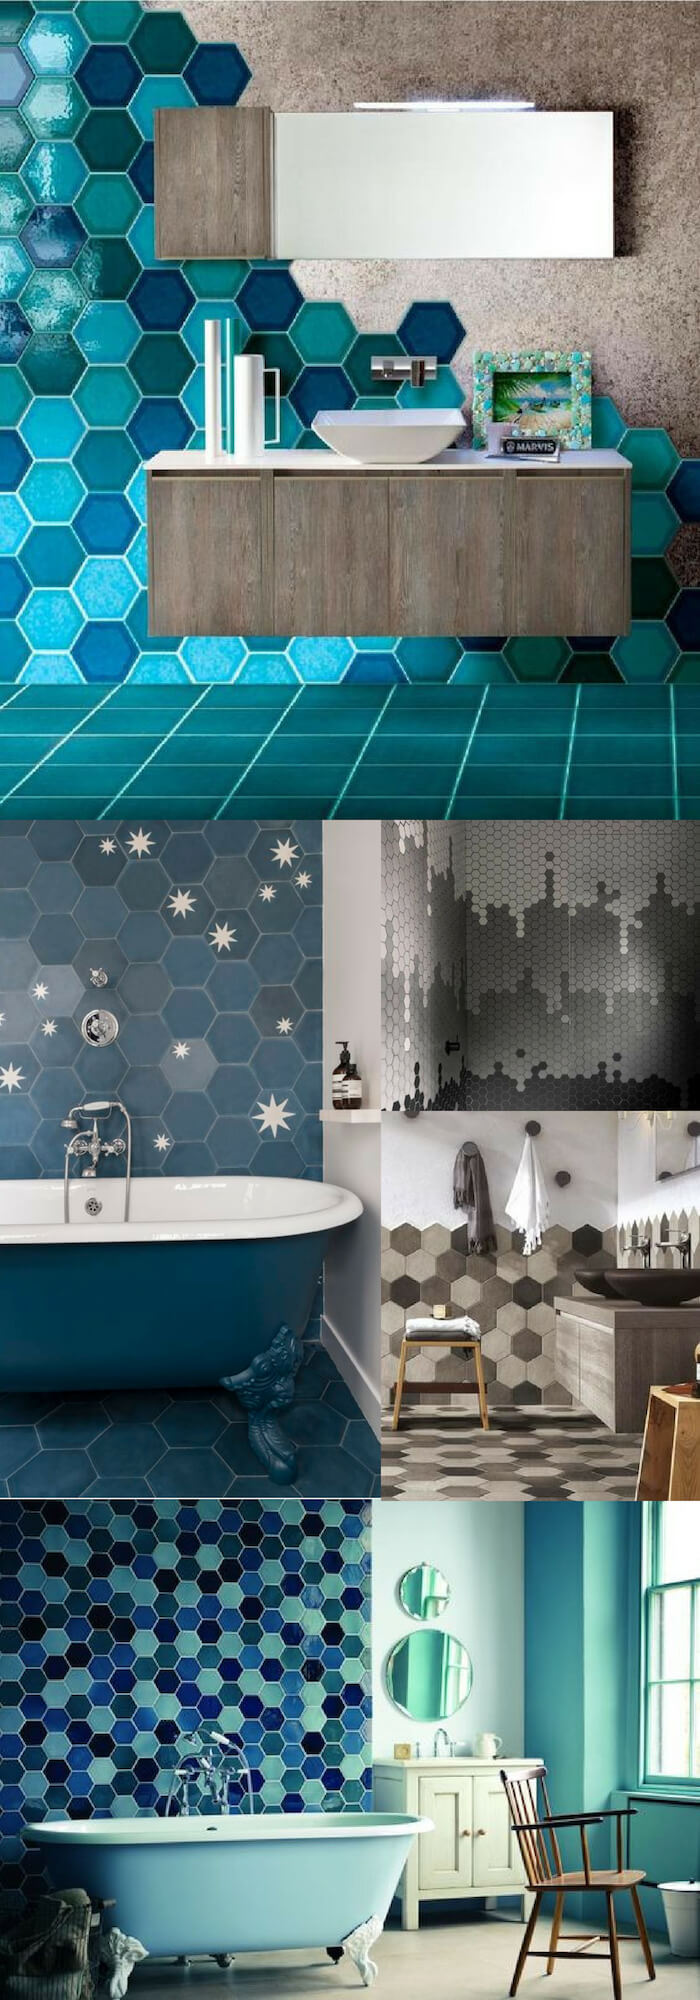 Hexagon wall | Unique Wall Tile Ideas for Bathroom Design